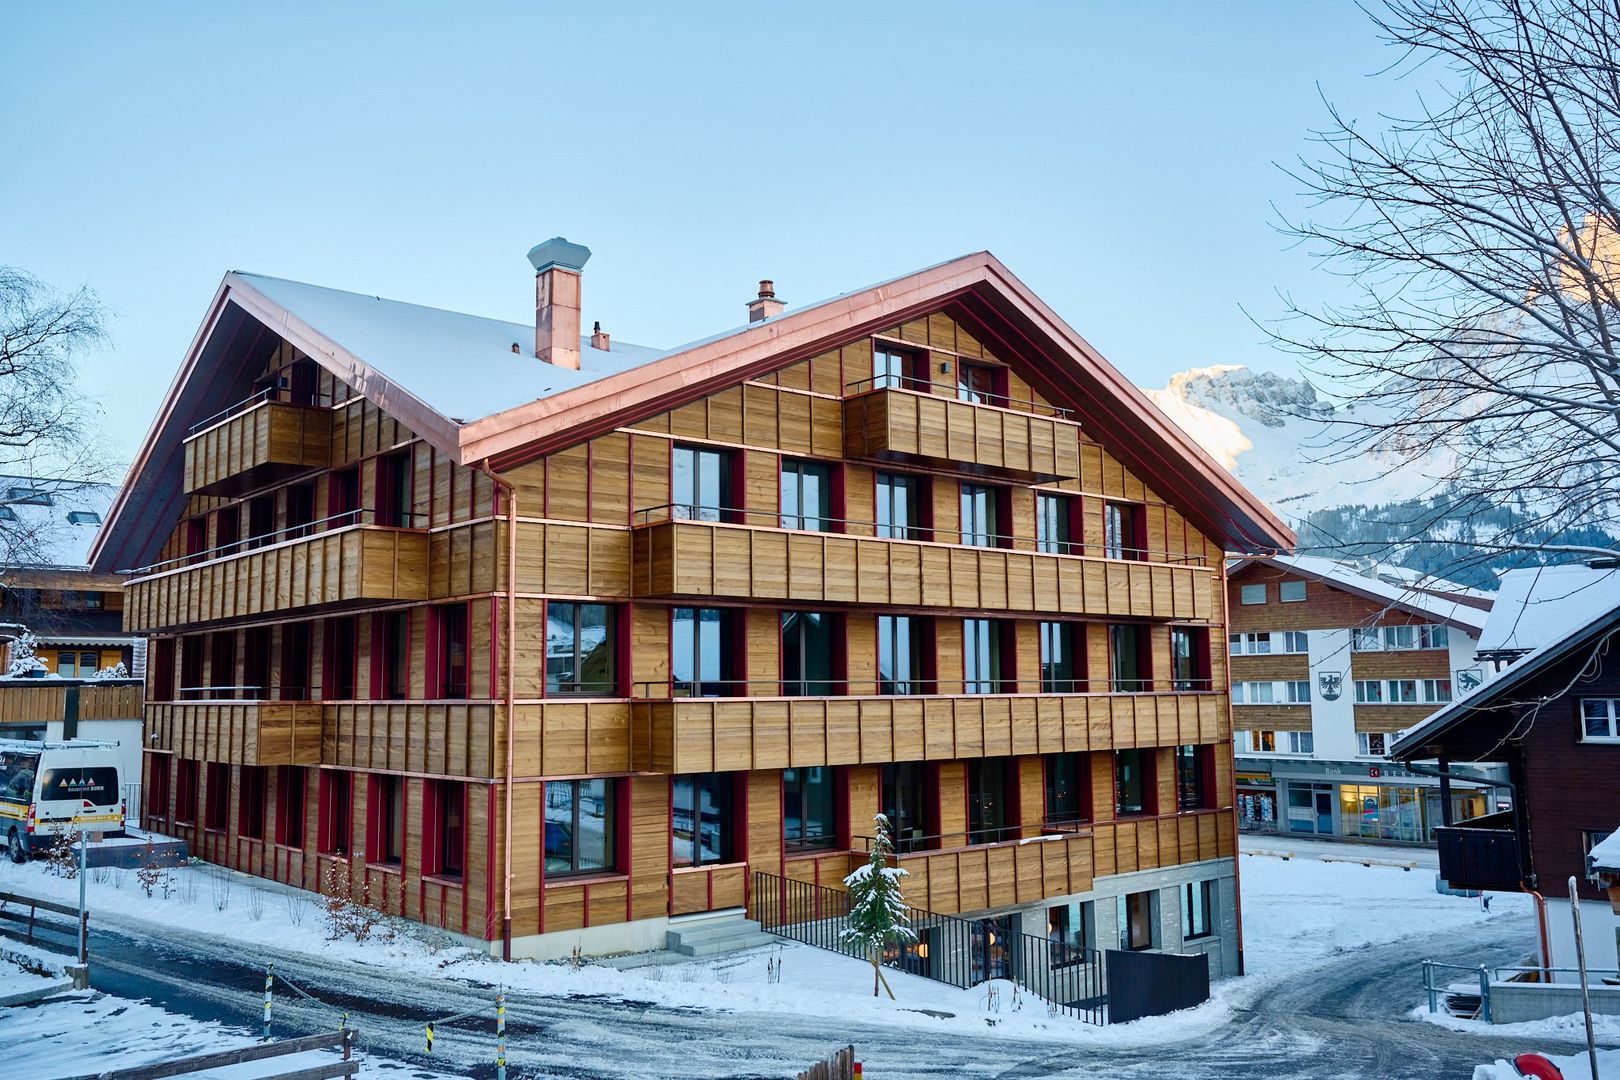 Apart Hotel Adelboden am Dorfplatz (Winter Special) günstig / Adelboden Last-Minute